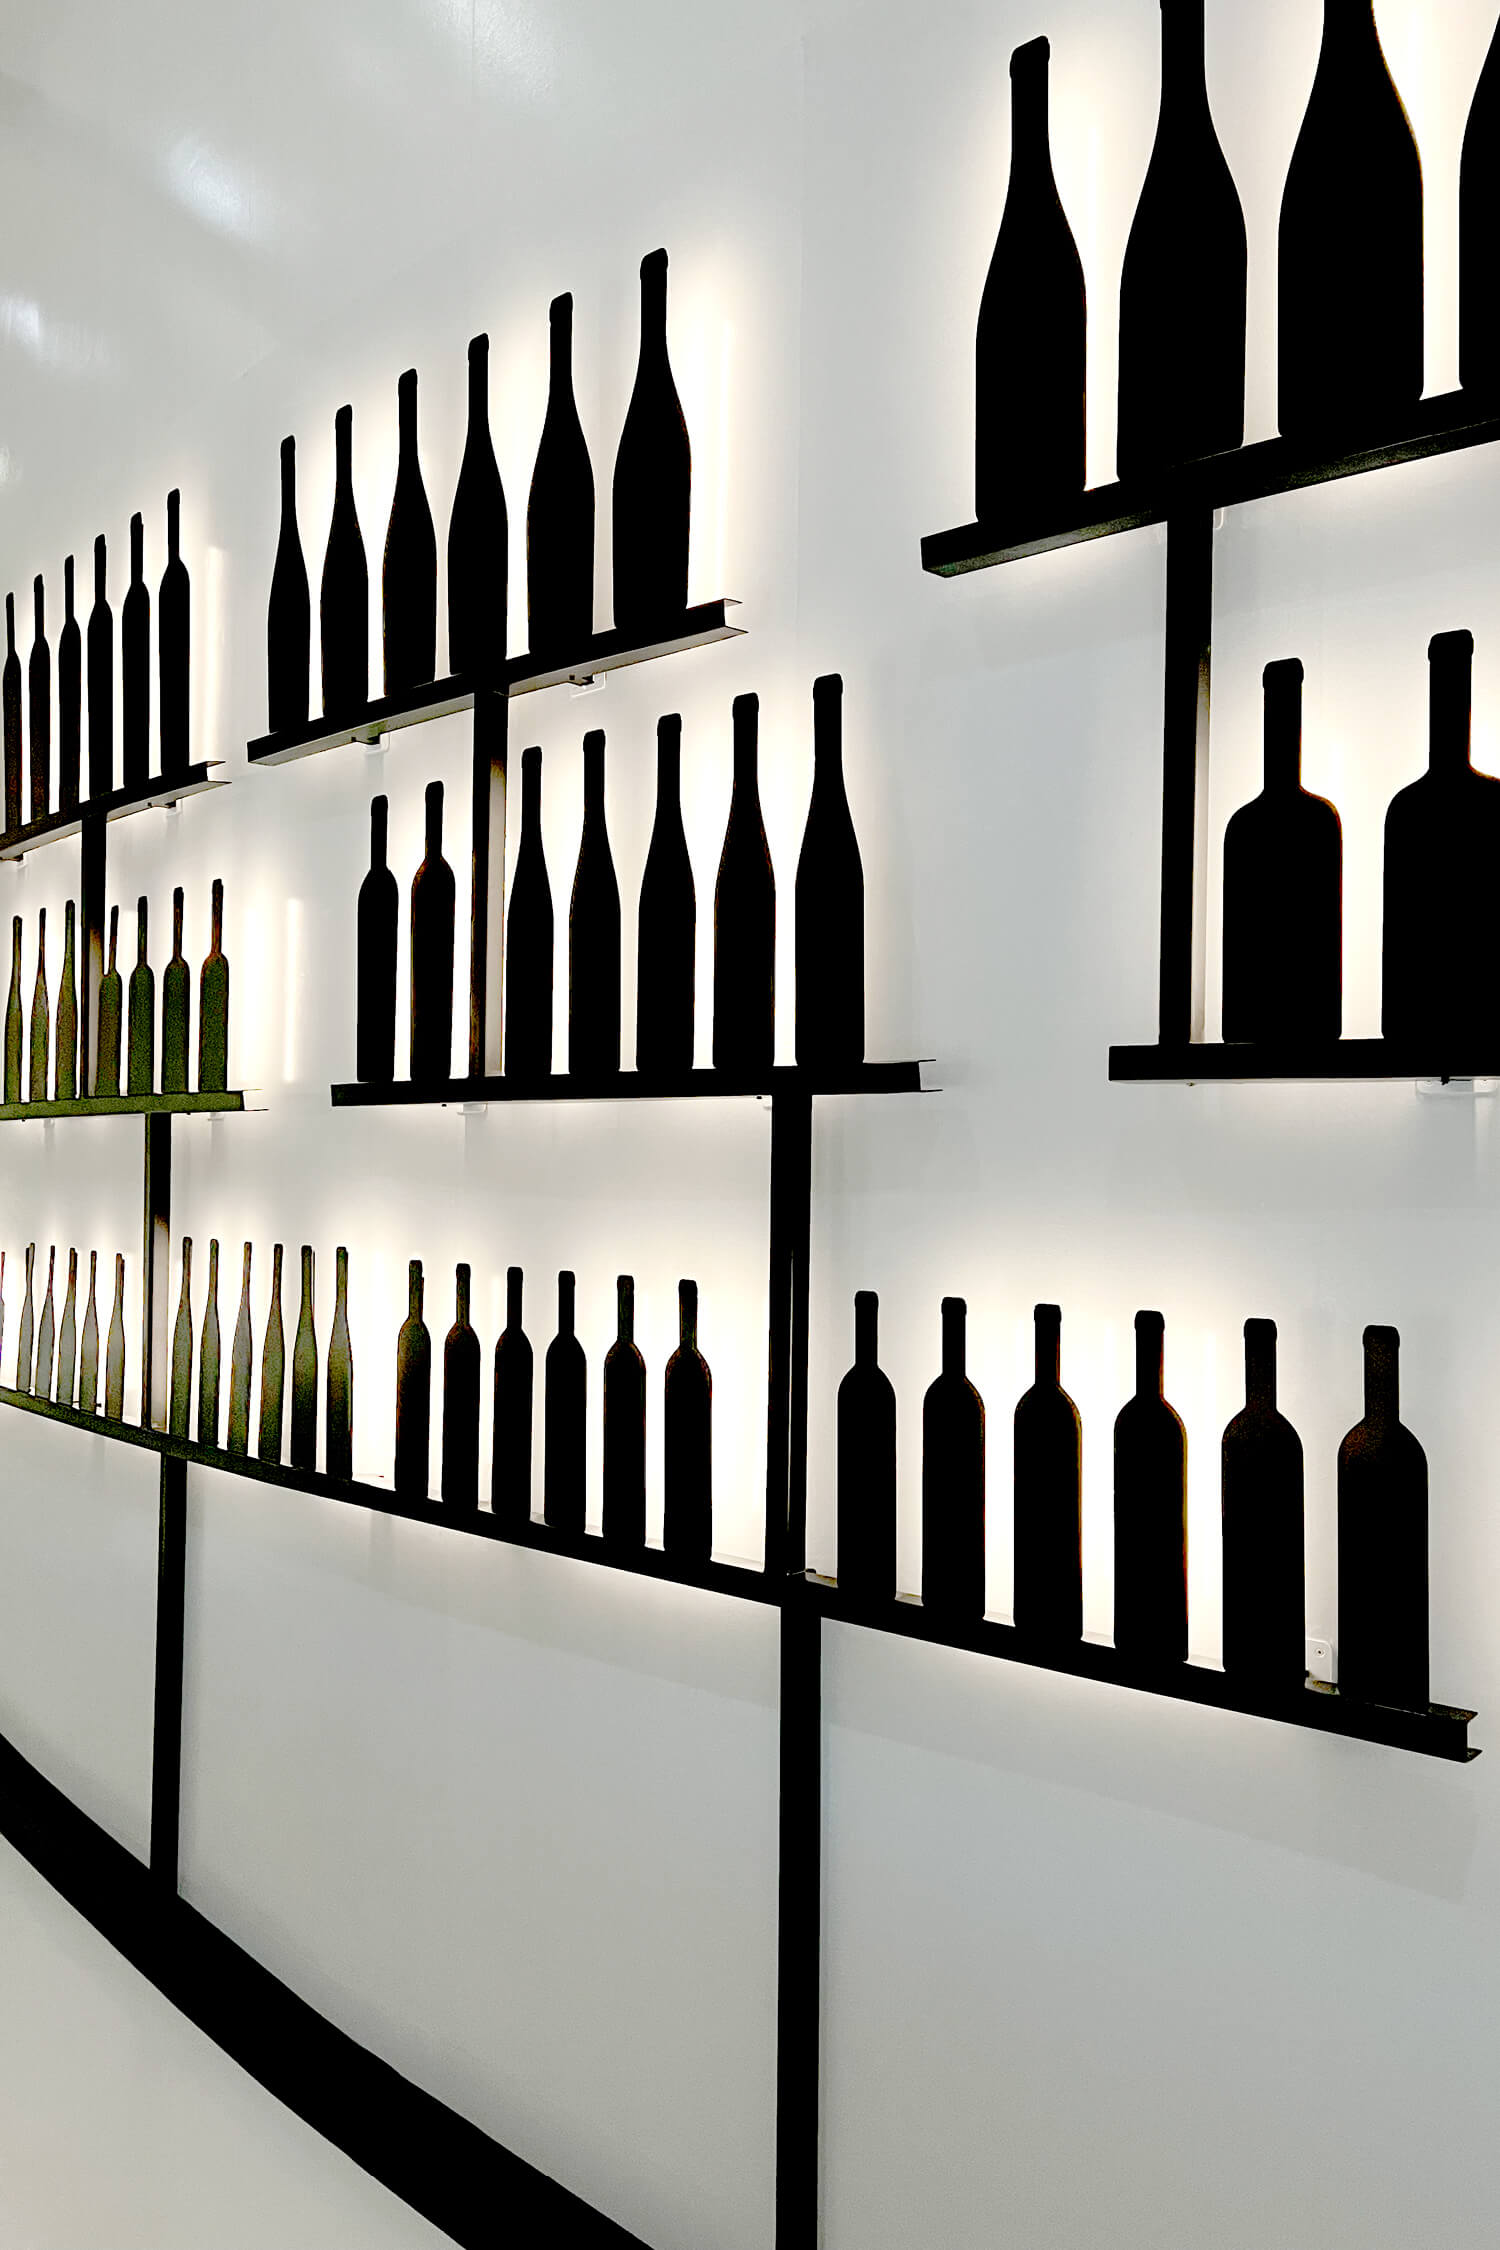 Les bouteilles en metal noir dessine par IchetKar sont rétro éclairées et habille le mur de la cité du vin de Bordeaux